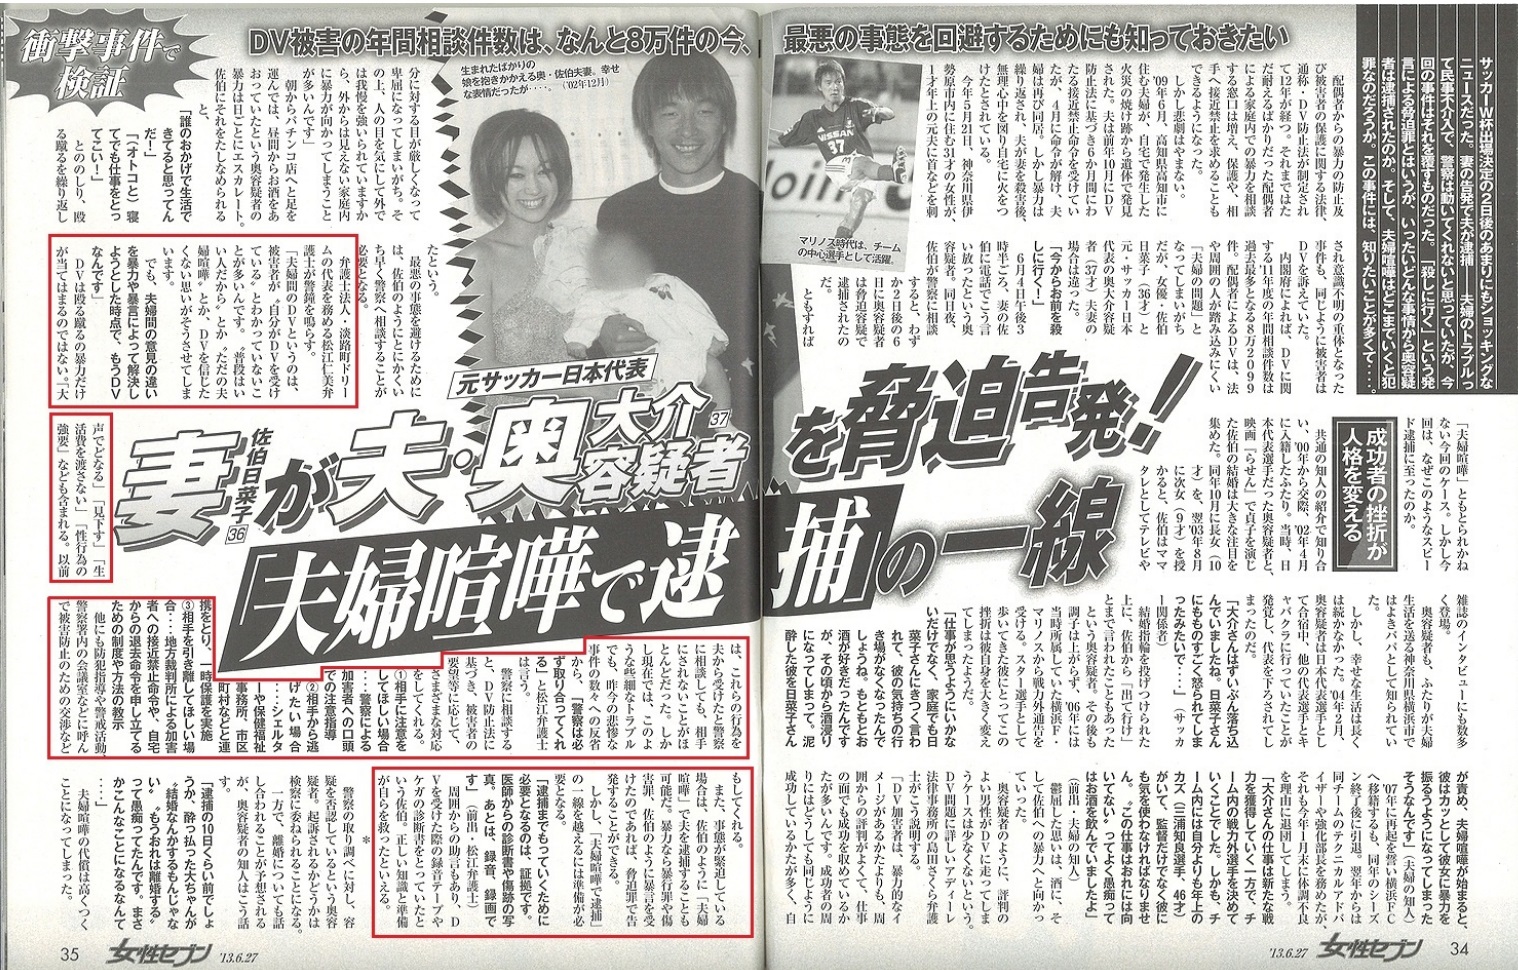 雑誌「女性セブン」に、夫婦間のドメスティックバイオレンス（ＤＶ）被害について、代表弁護士松江仁美がコメントを提供しました。